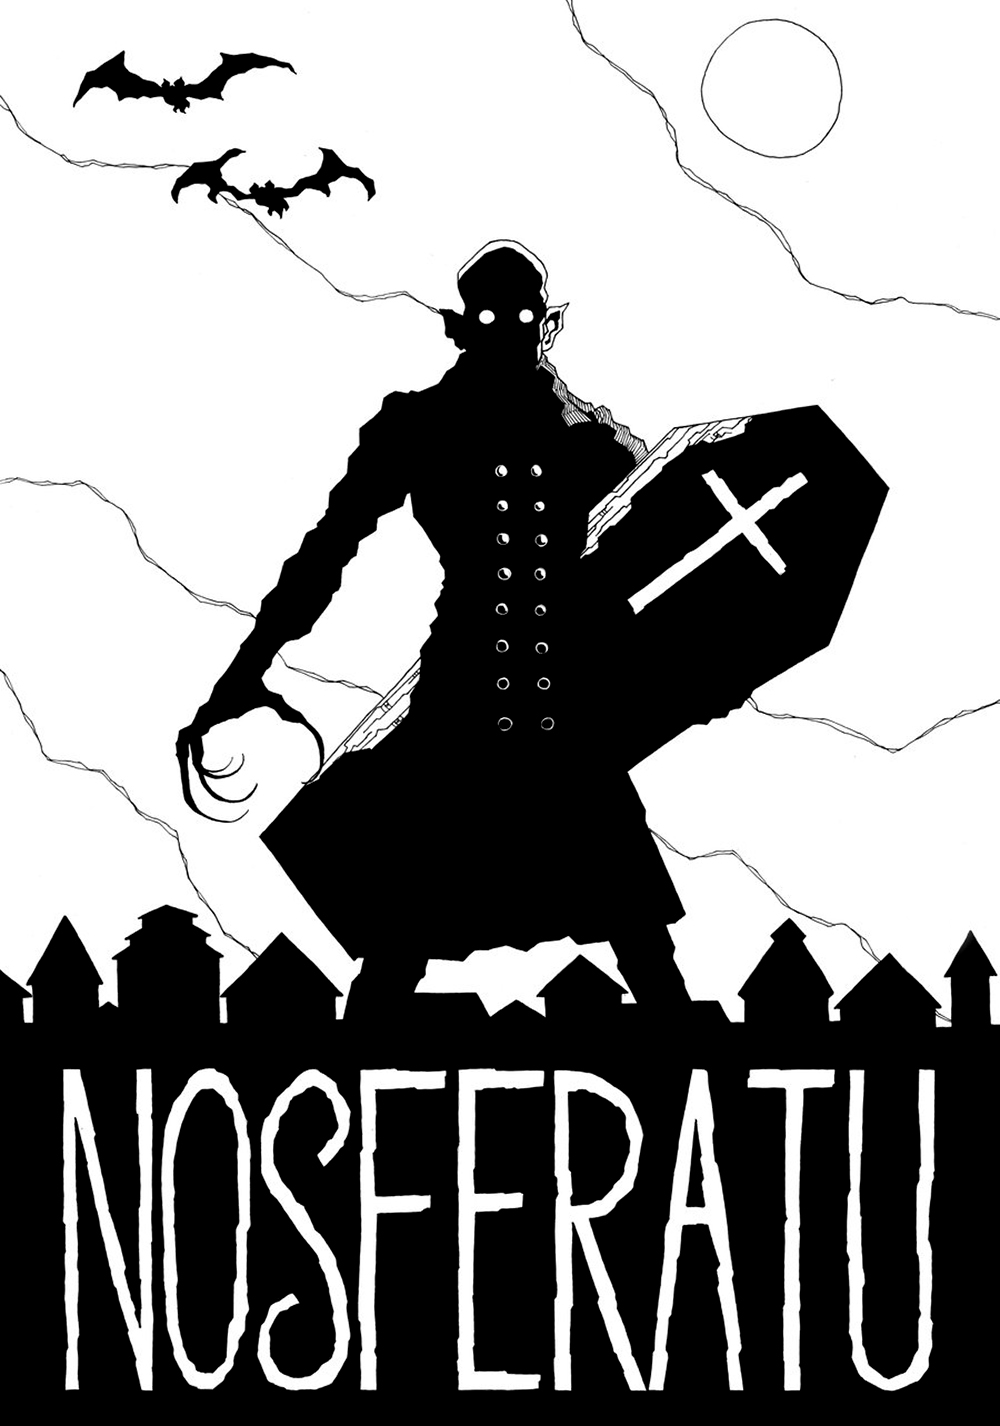 Nosferatu Picture